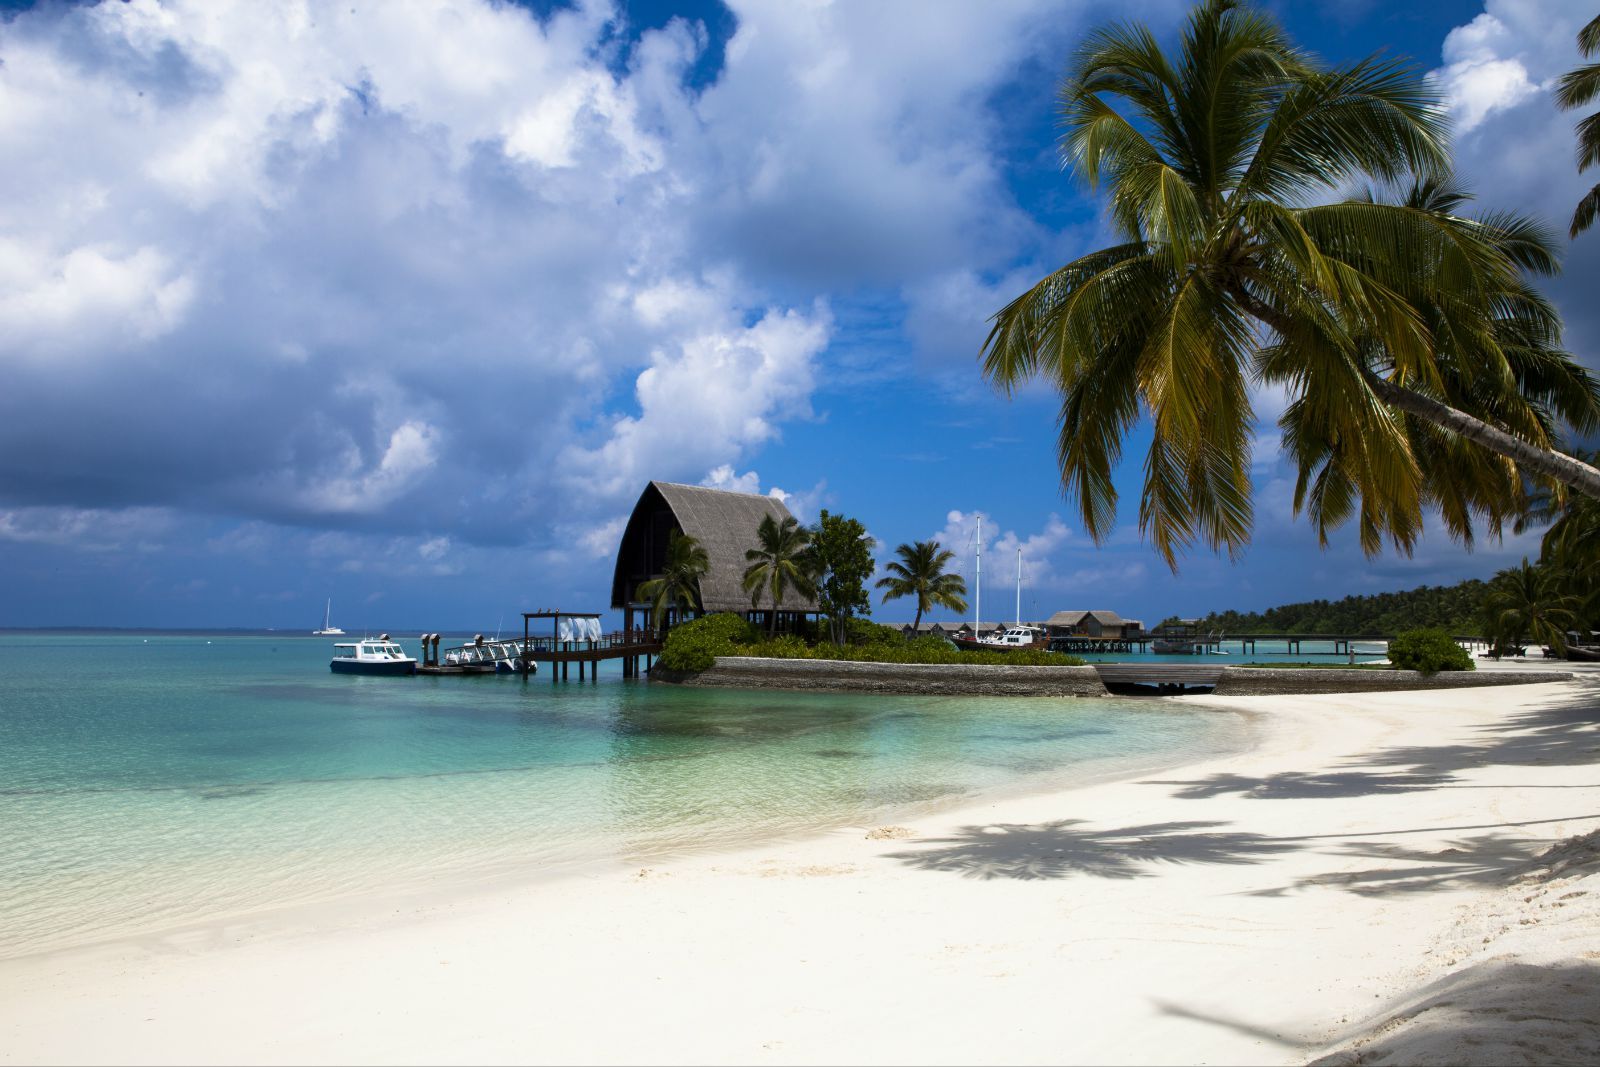 马尔代夫选岛拥有世界上最美的风景,不仅有诗,还有美丽的远方!